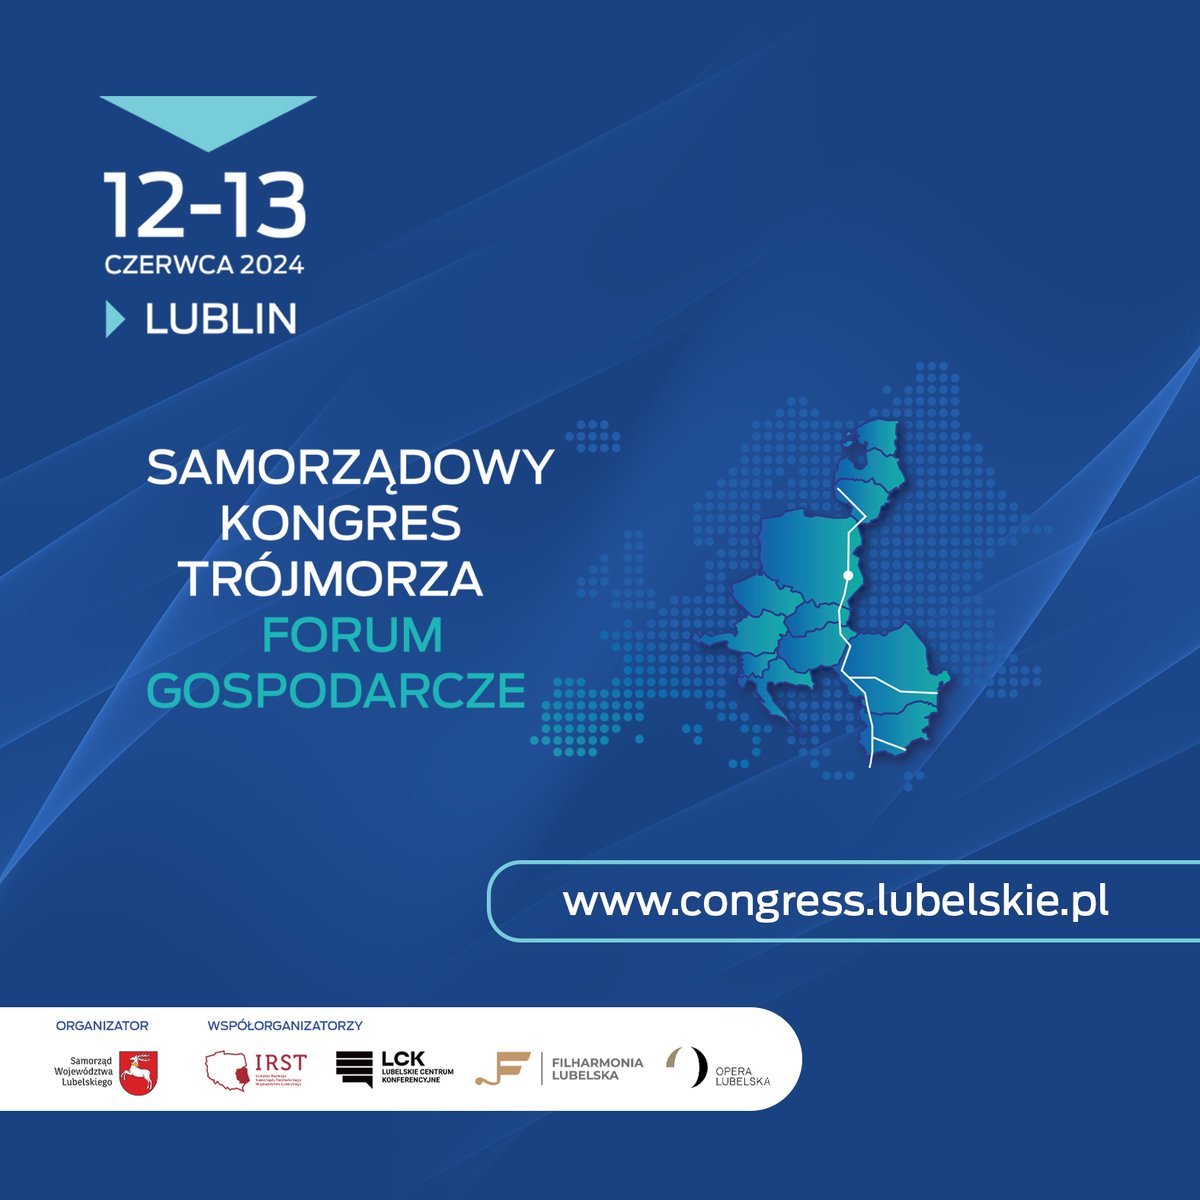 🌍📣 IV Kongres Trójmorza & Forum Gospodarcze w Lublinie, 12-13 czerwca 2024! 🇵🇱 Pod patronatem Prezydenta RP A. Dudy, liderzy z 13 państw Trójmorza. 🔍 Tematy: Energia, AI, 3W,Via Carpatia, Cyfryzacja, Zdrowie #KongresTrójmorza #Trójmorze #Innowacje #Biznes